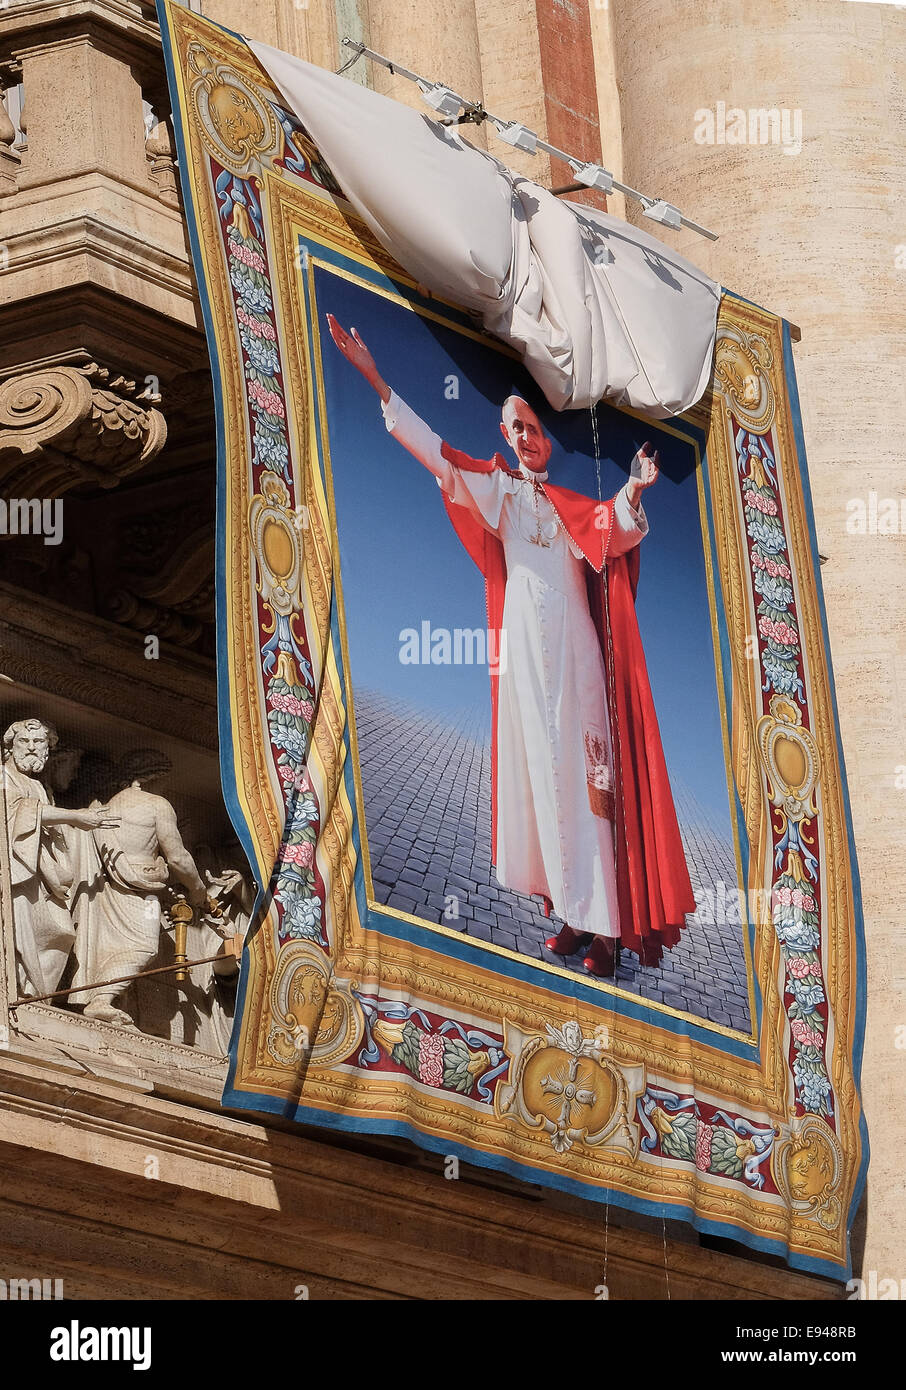 Ciudad del Vaticano. 19 Oct, 2014. Beatificación del Papa Pablo VI el 19 de septiembre de 2014 Crédito: Realmente fácil Star/Alamy Live News Foto de stock